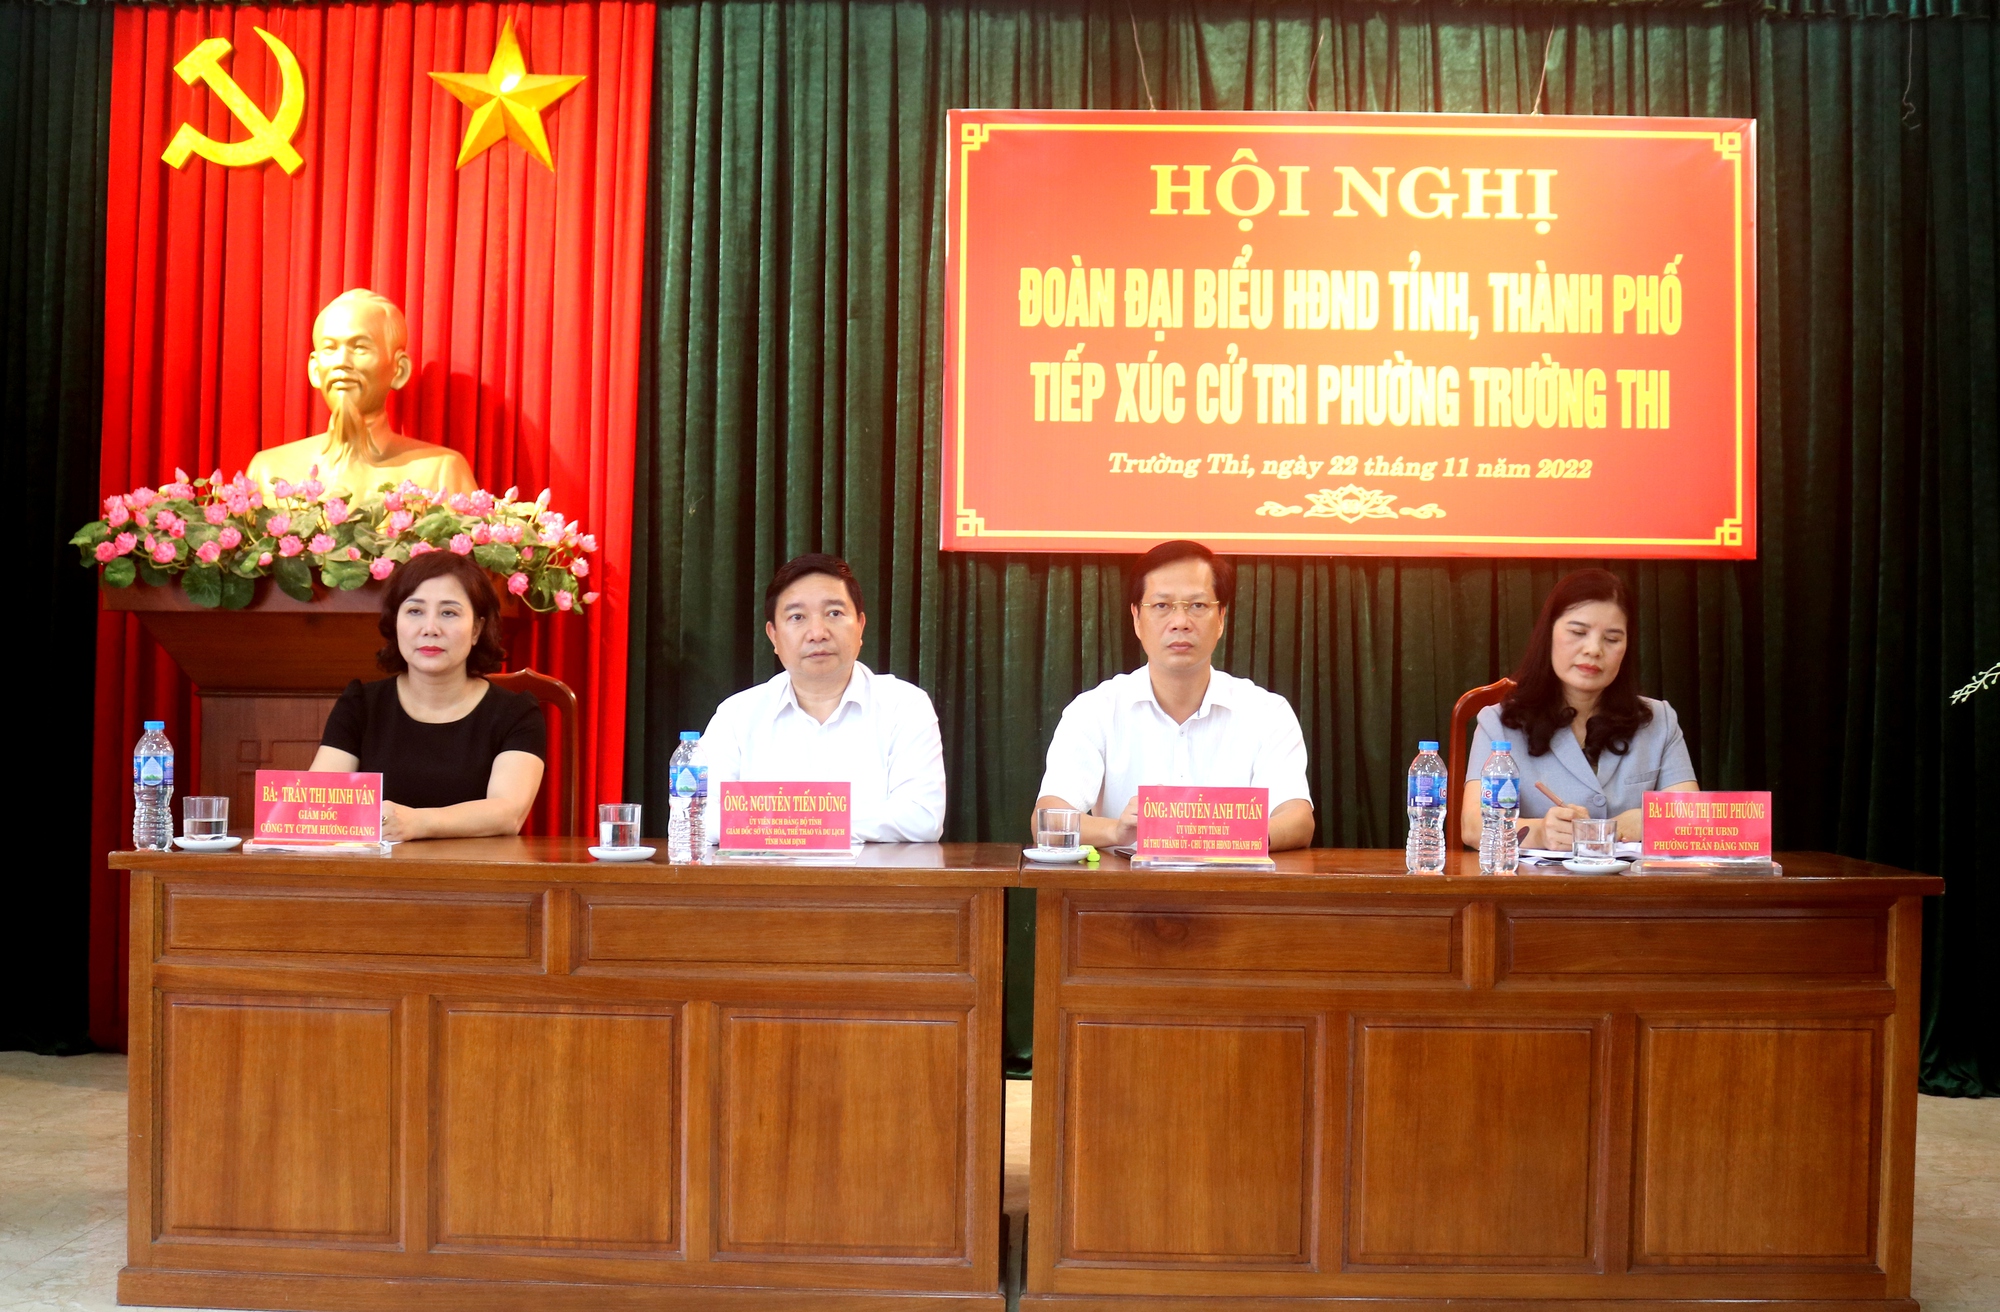 HĐND Nam Định cho một giám đốc doanh nghiệp thôi làm đại biểu HĐND tỉnh - Ảnh 1.